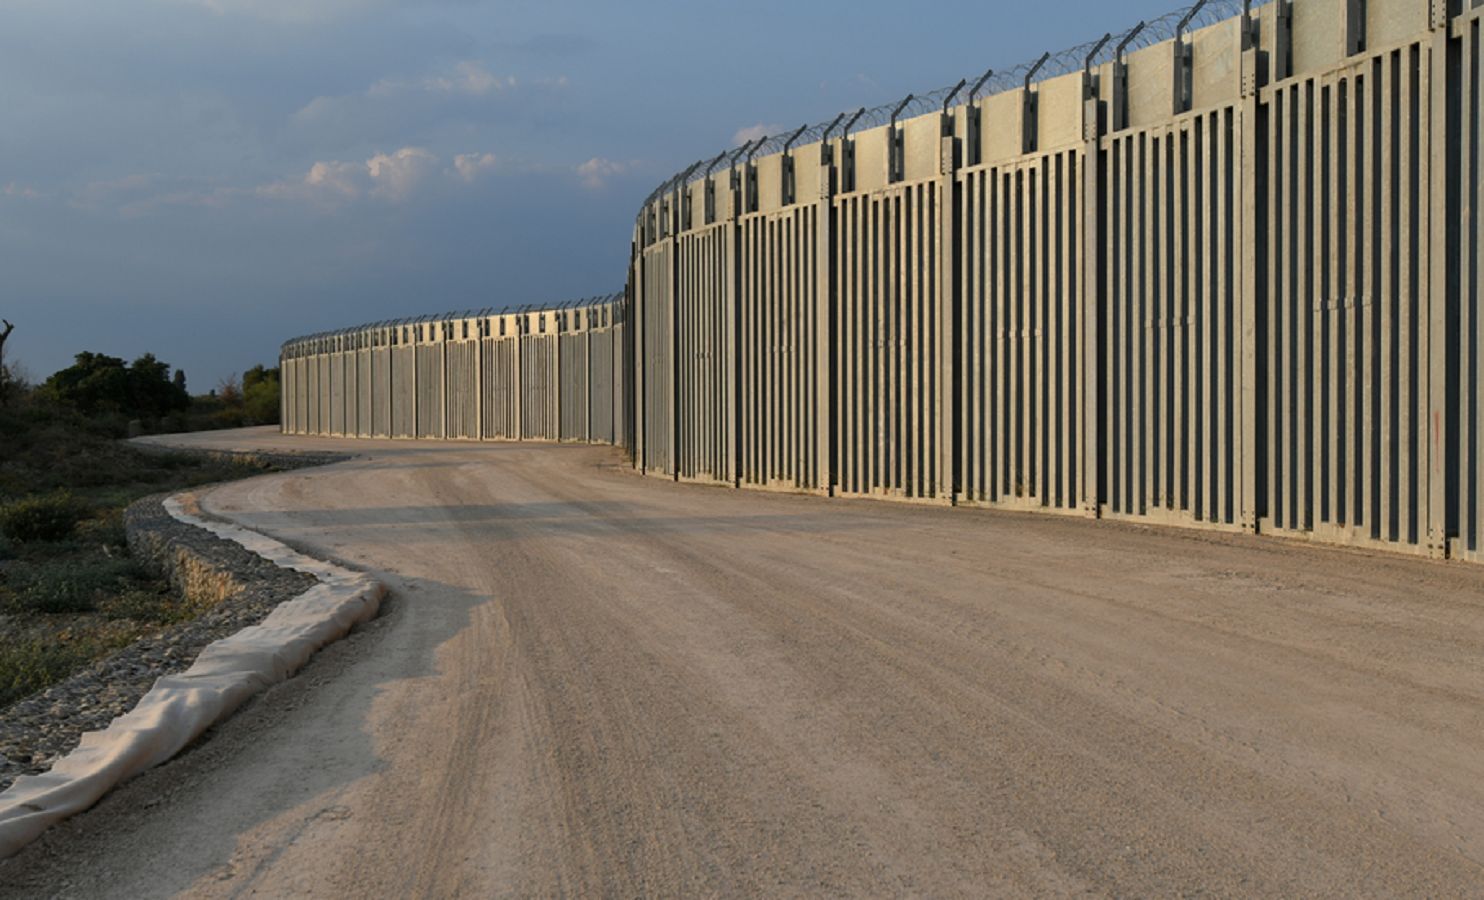 Uchodźcy z Afganistanu. Europejski kraj właśnie postawił mur na granicy